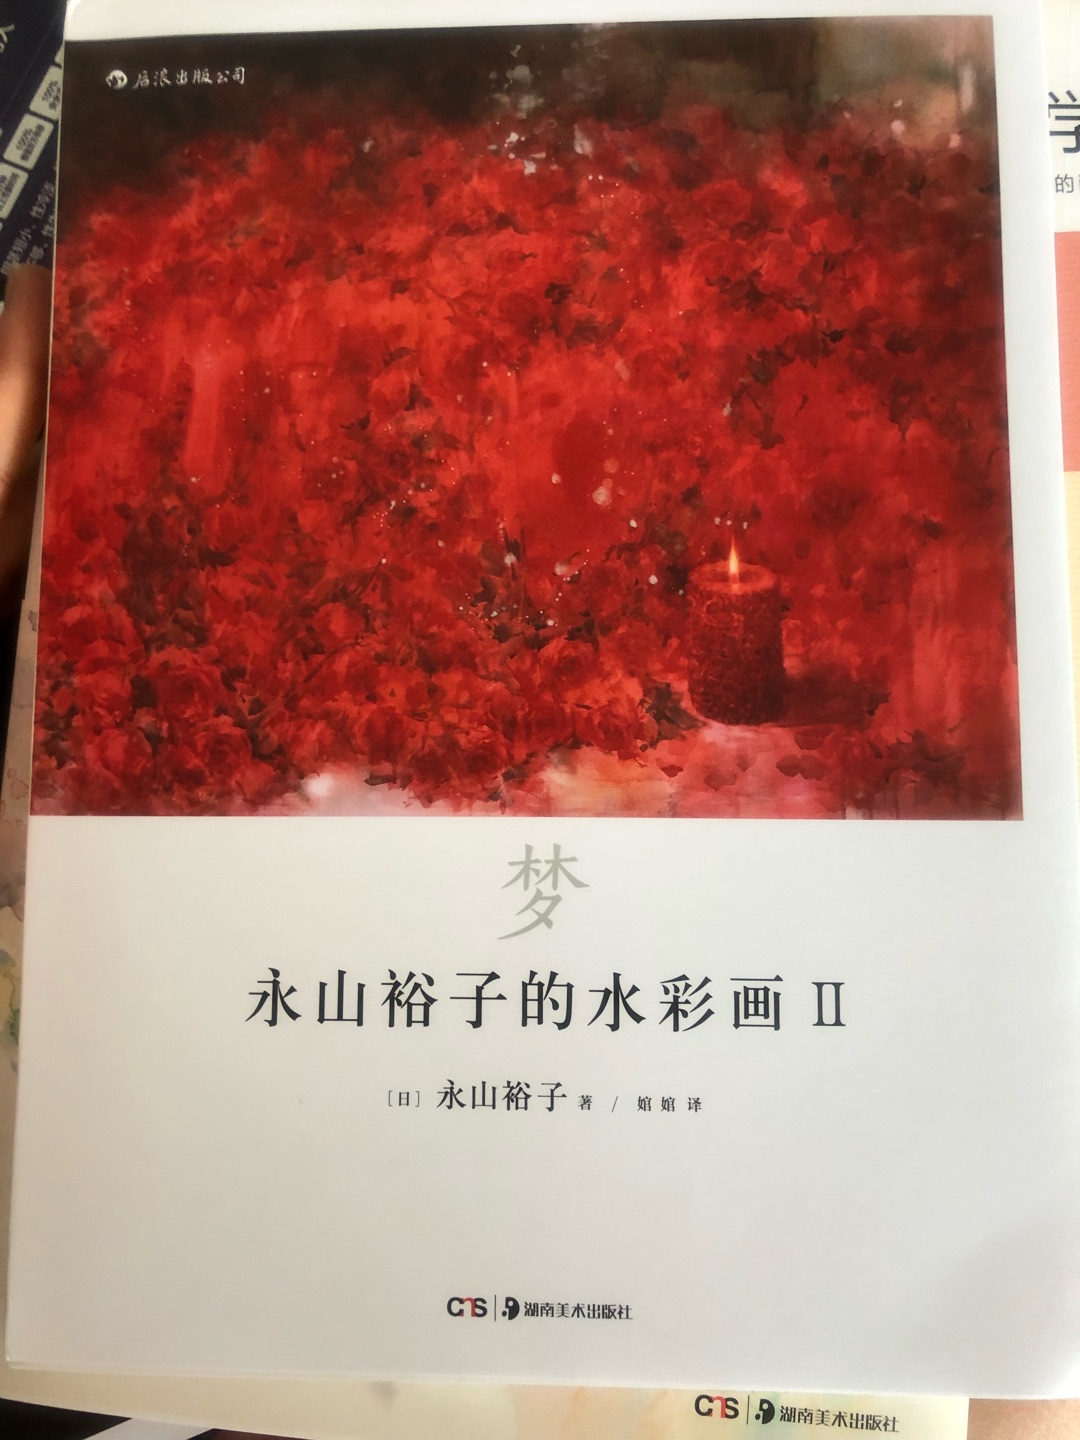 喜欢永山裕子的画，把一套书都买齐了，打算好好学习，书的质量不错，买书很方便价格也实惠，五星好评！